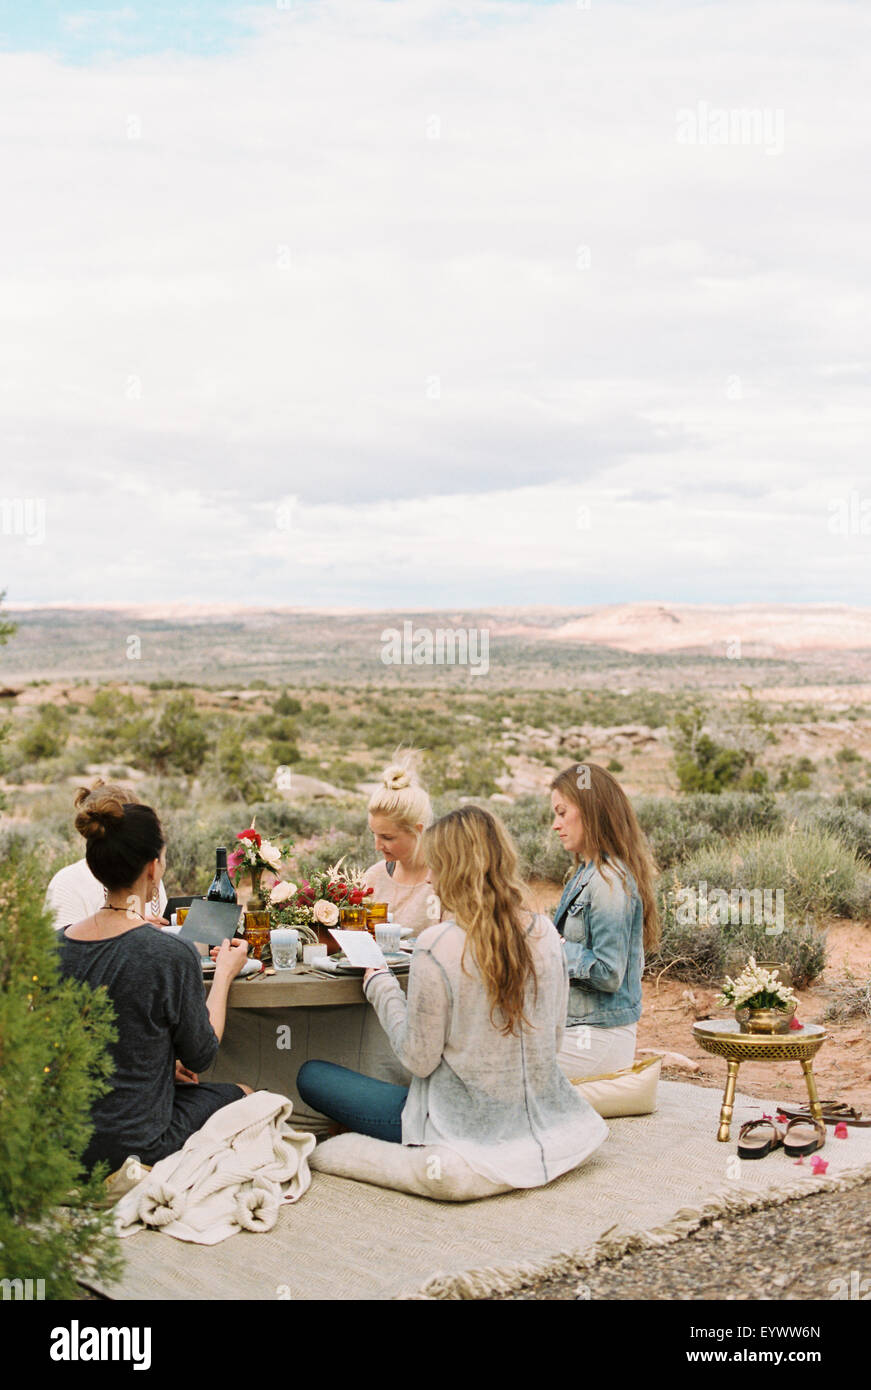 Un grupo de mujeres, amigos, sentados en el suelo alrededor de una mesa en el desierto. Foto de stock